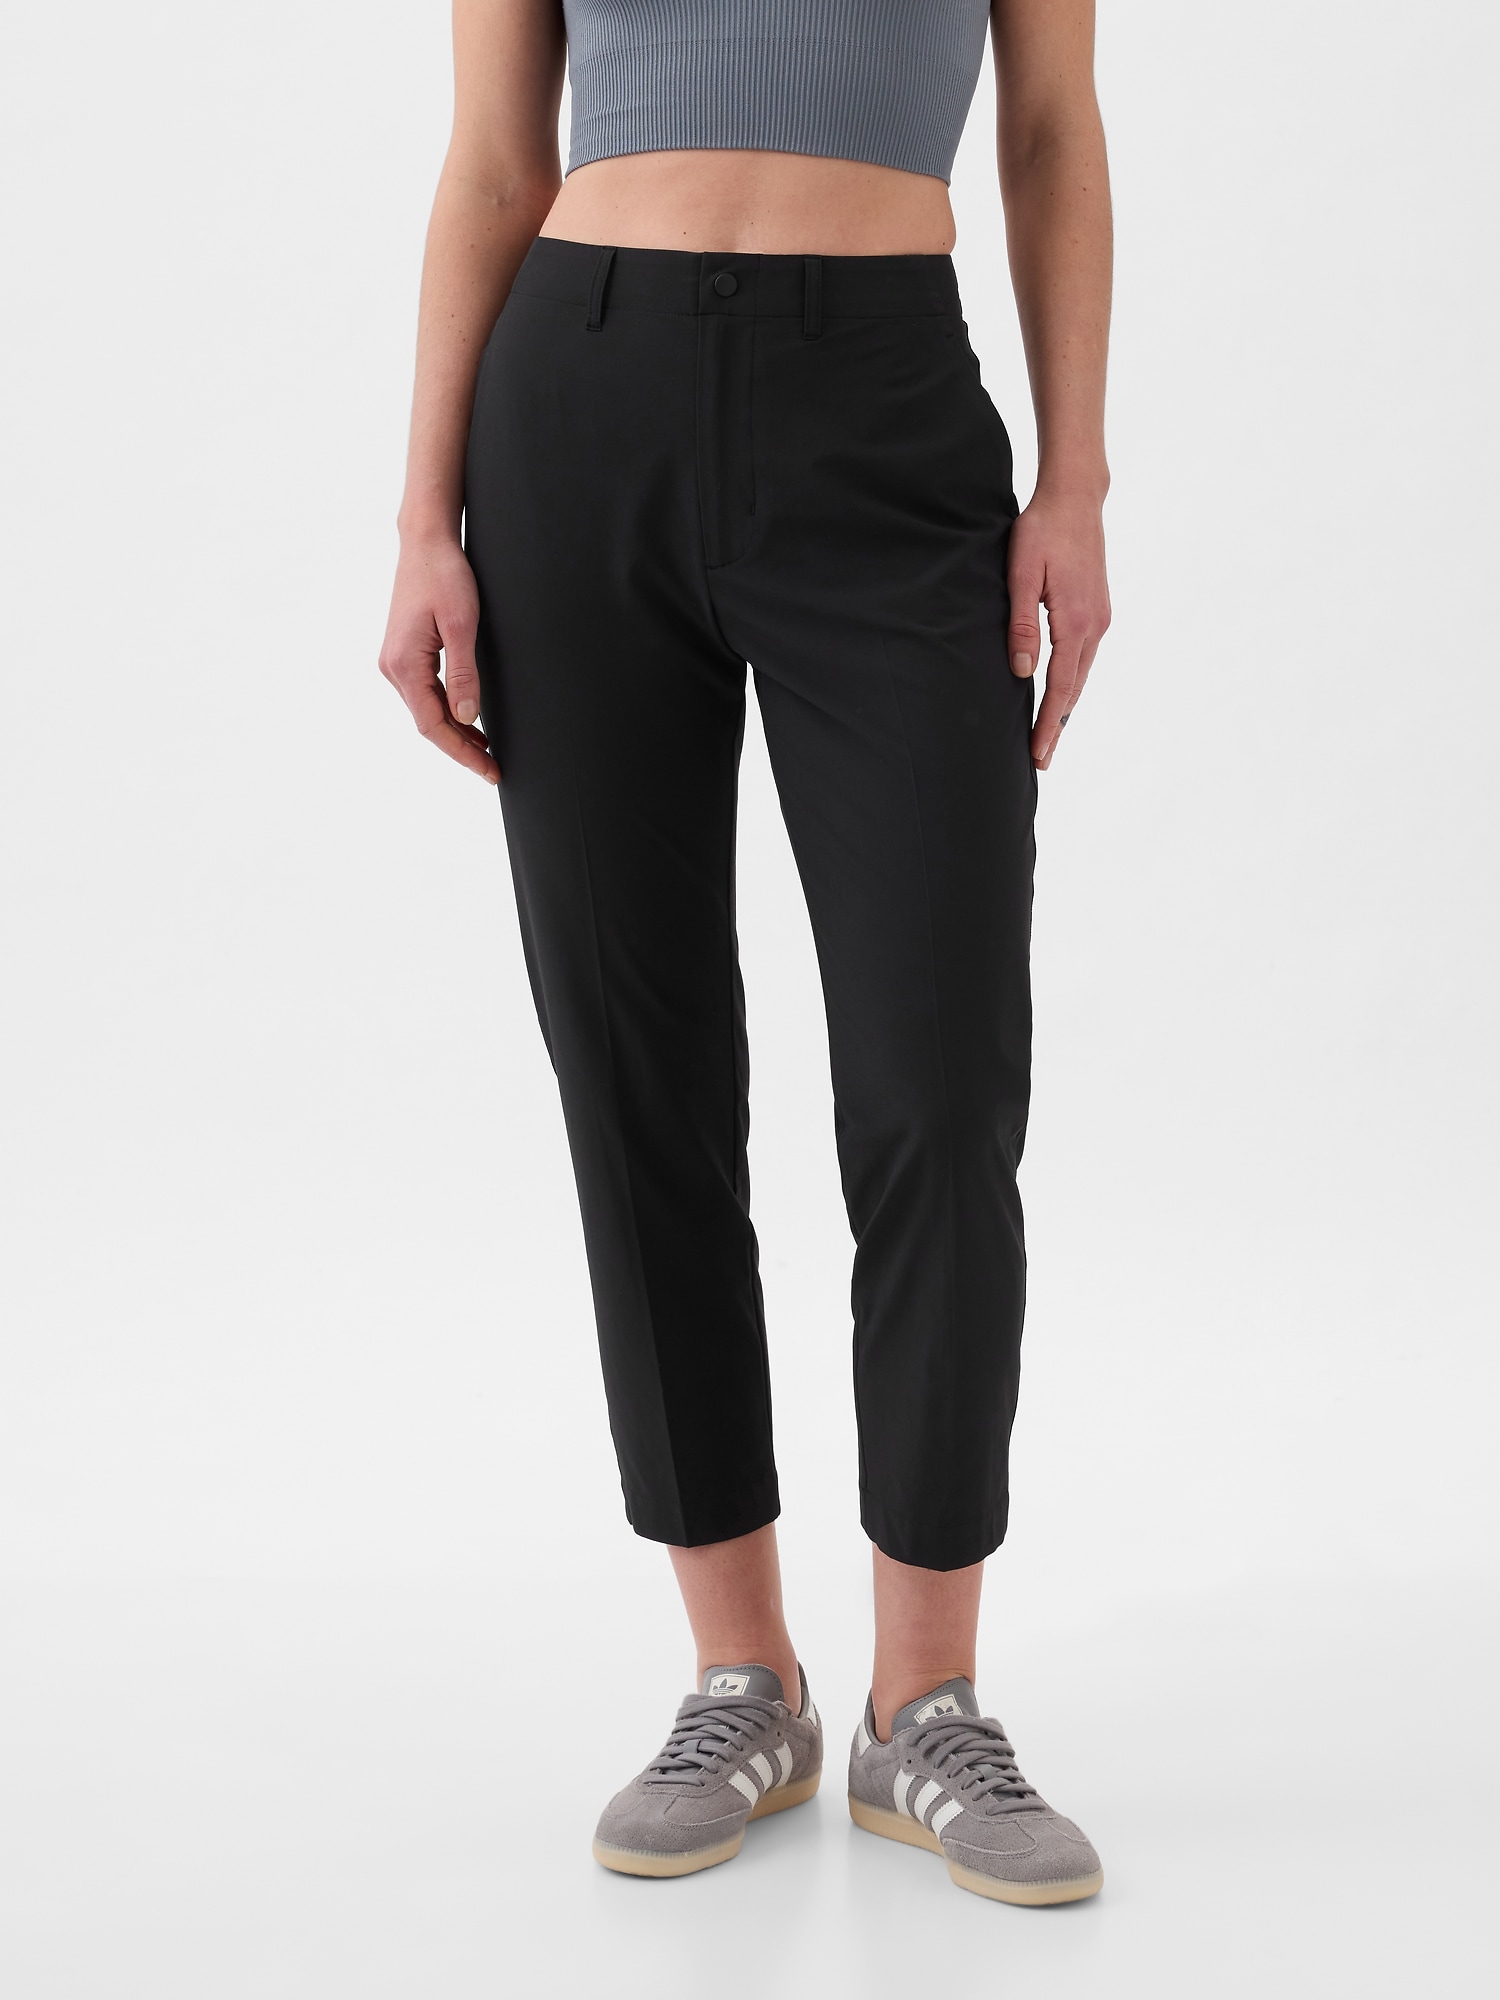 Gap Fit Black Active Pants Size M - 55% off